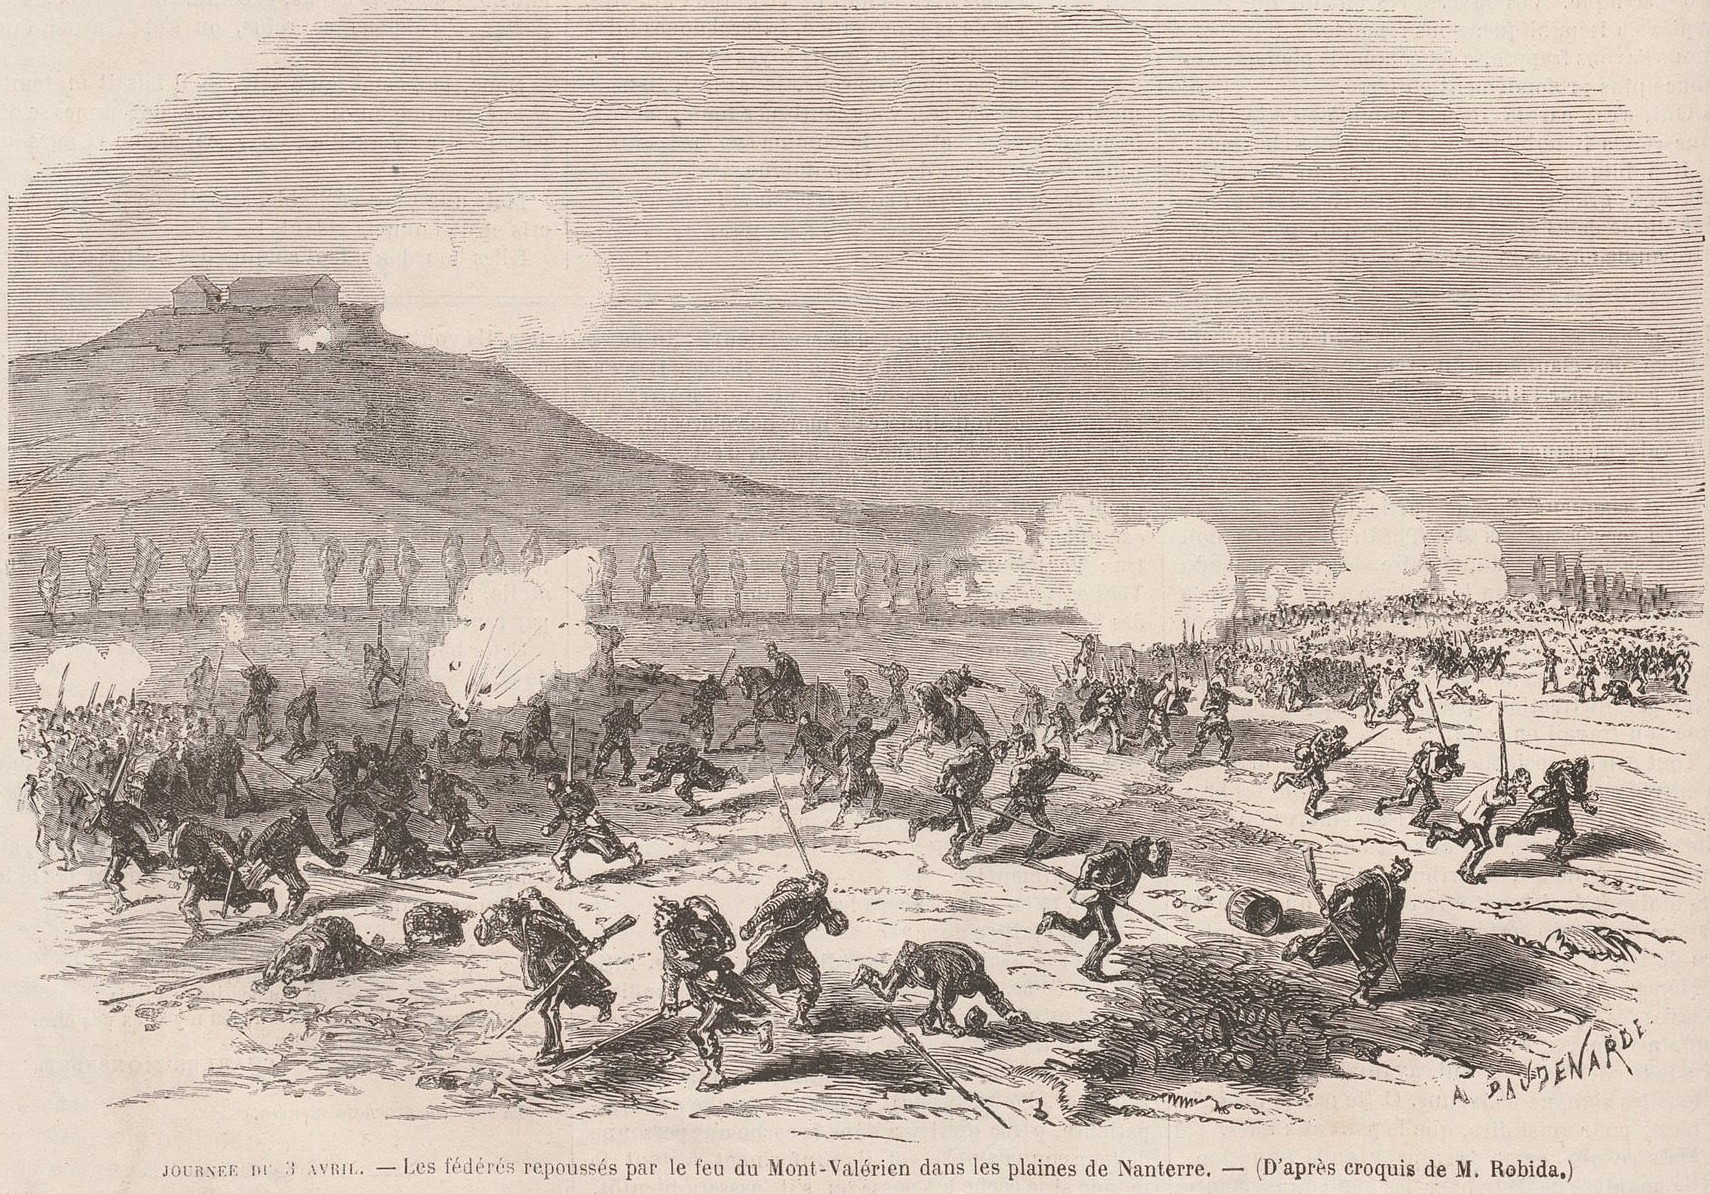 3 avril 1871 – Plaines de Nanterre, les  fédérés sont repoussés par les versaillais (source : Le Monde Illustré du 8 avril 1871)